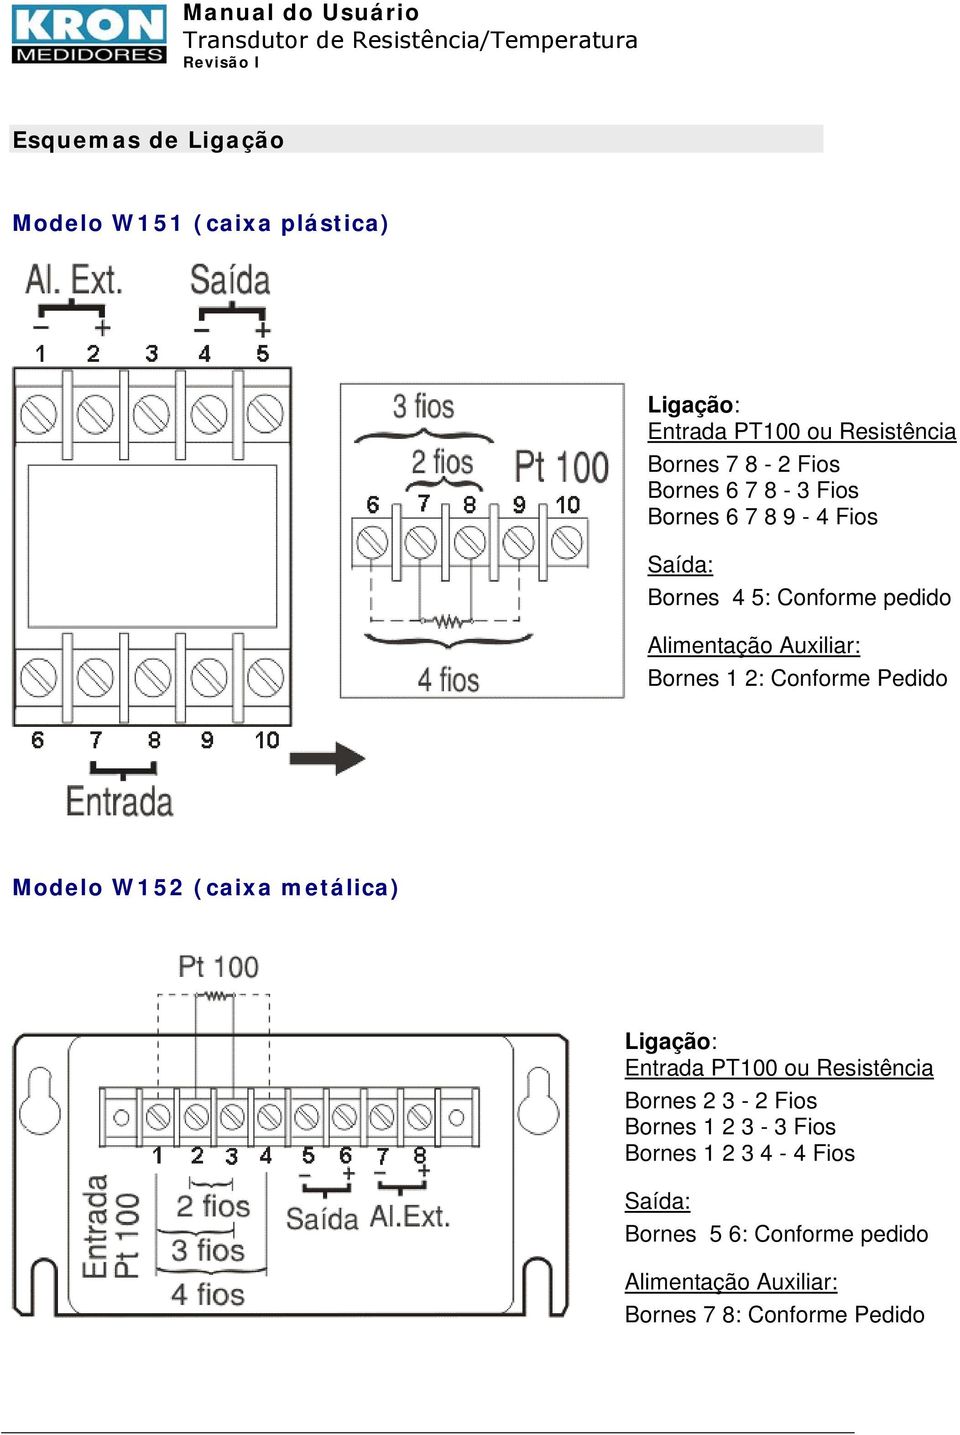 Modelo W152 (caixa metálica) Ligação: Entrada PT100 ou Resistência Bornes 2 3-2 Fios Bornes 1 2 3-3 Fios Bornes 1 2 3